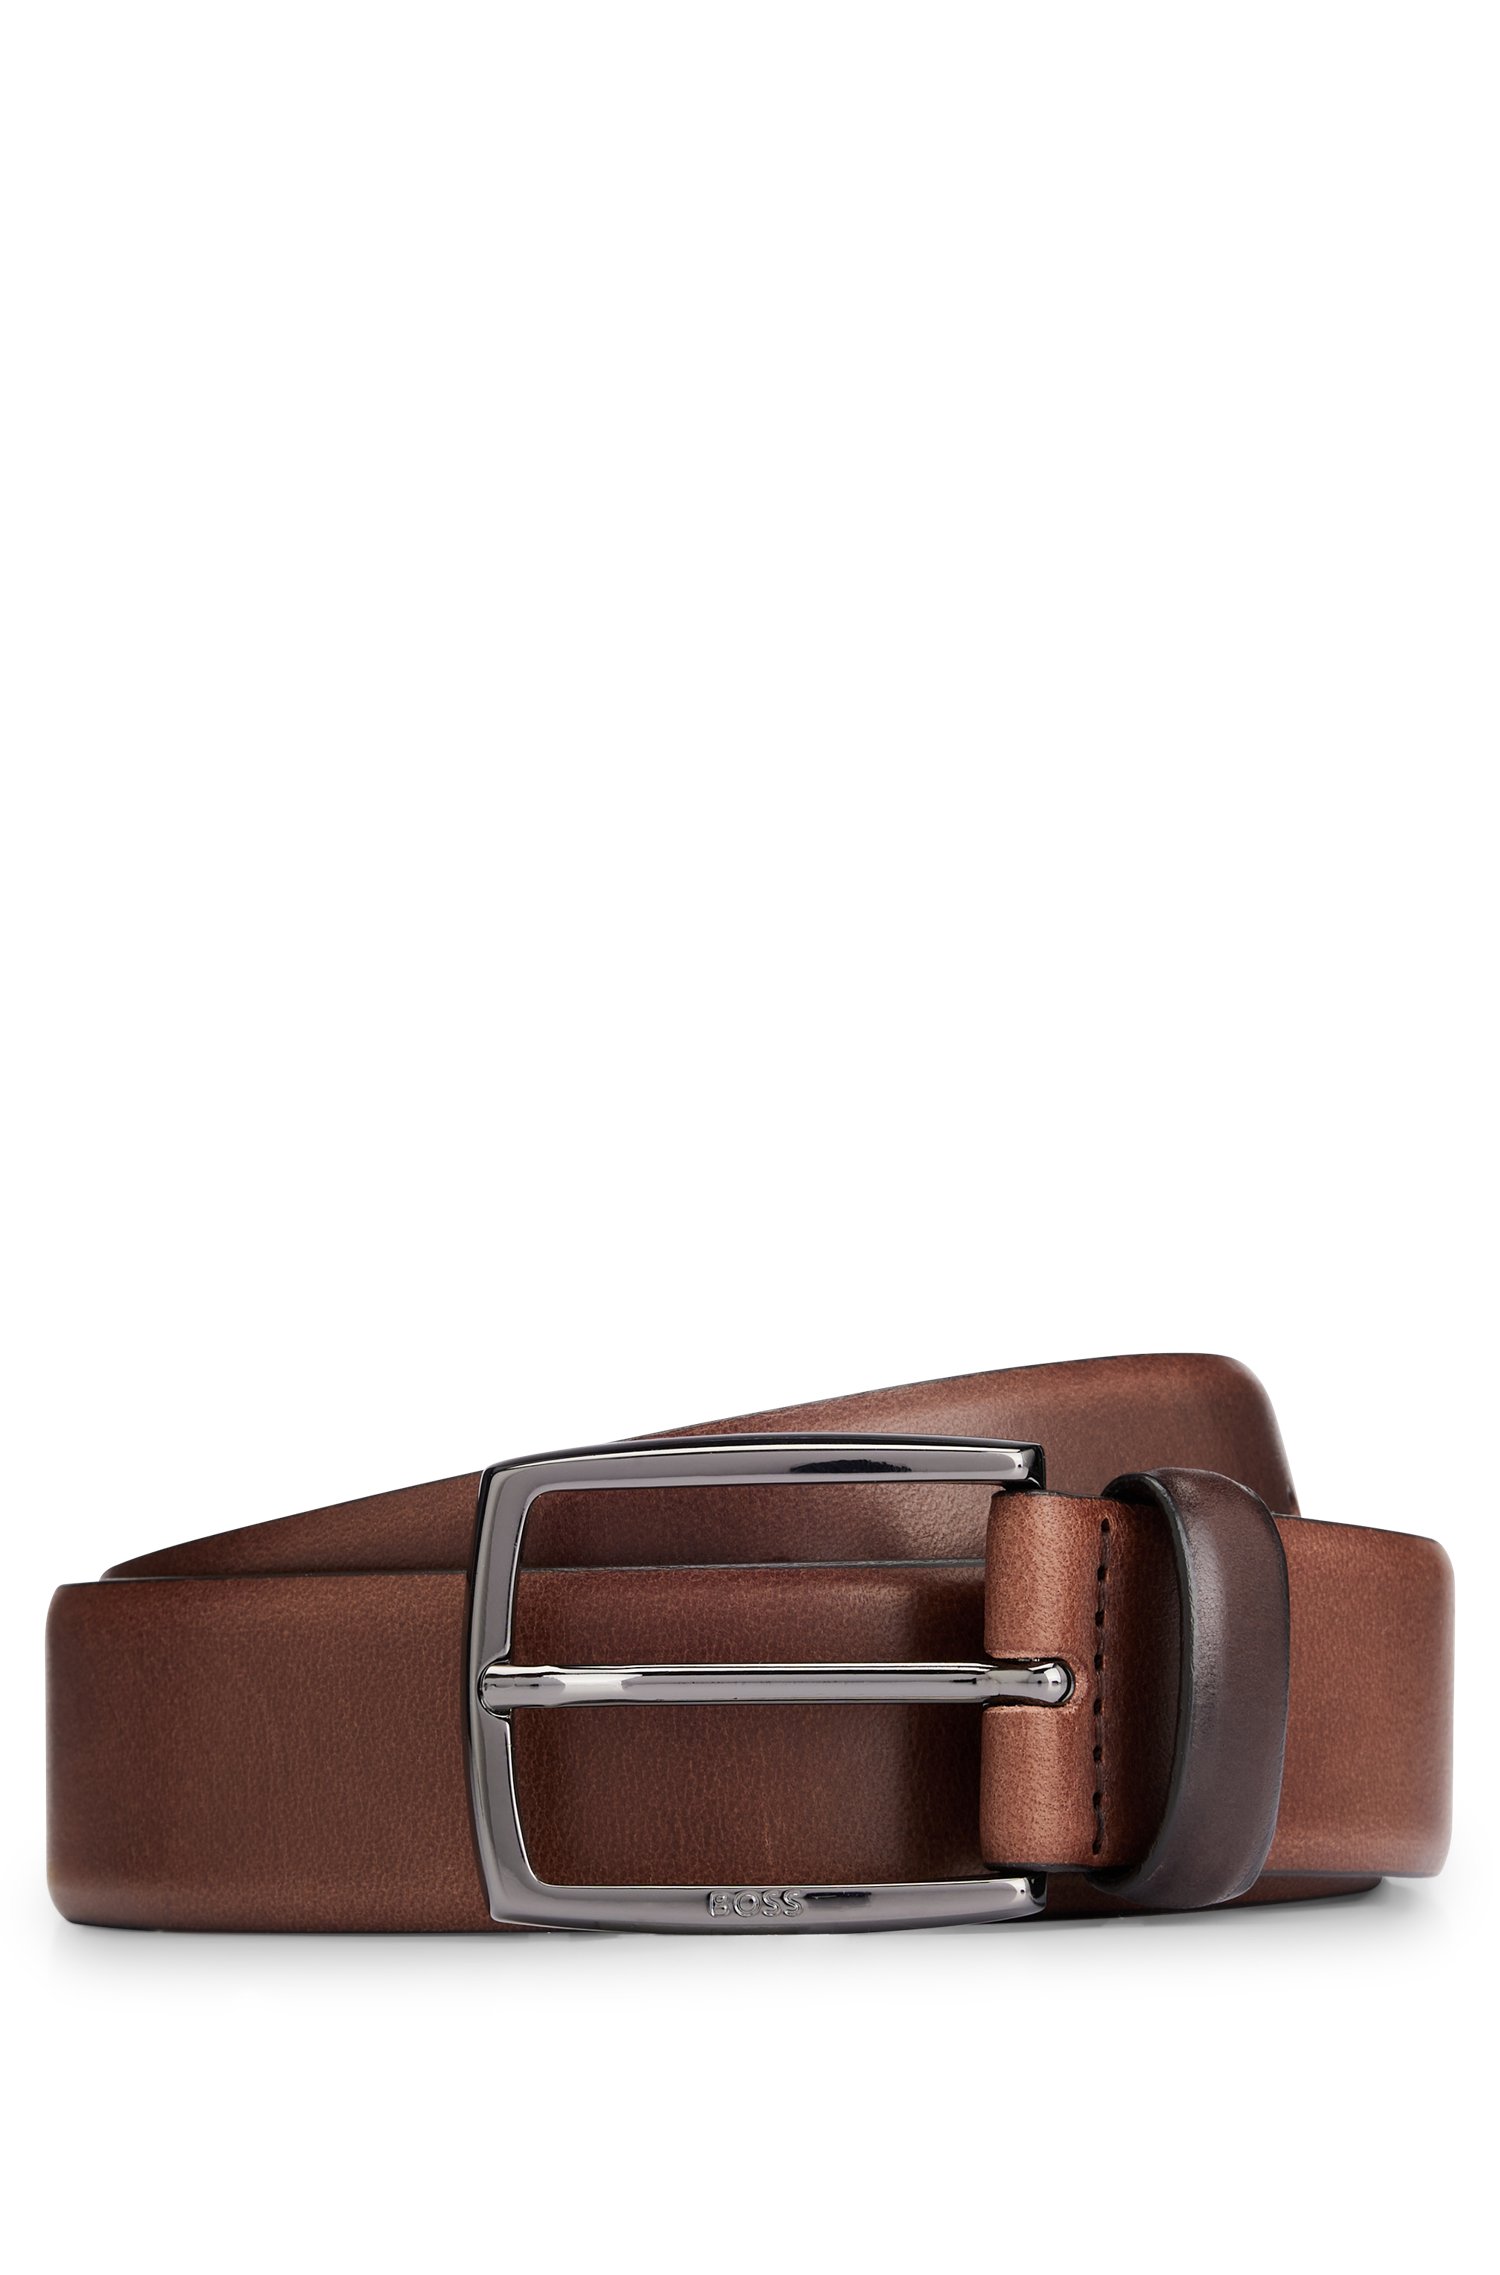 Cinturón de piel italiana con hebilla metal pesado pulido